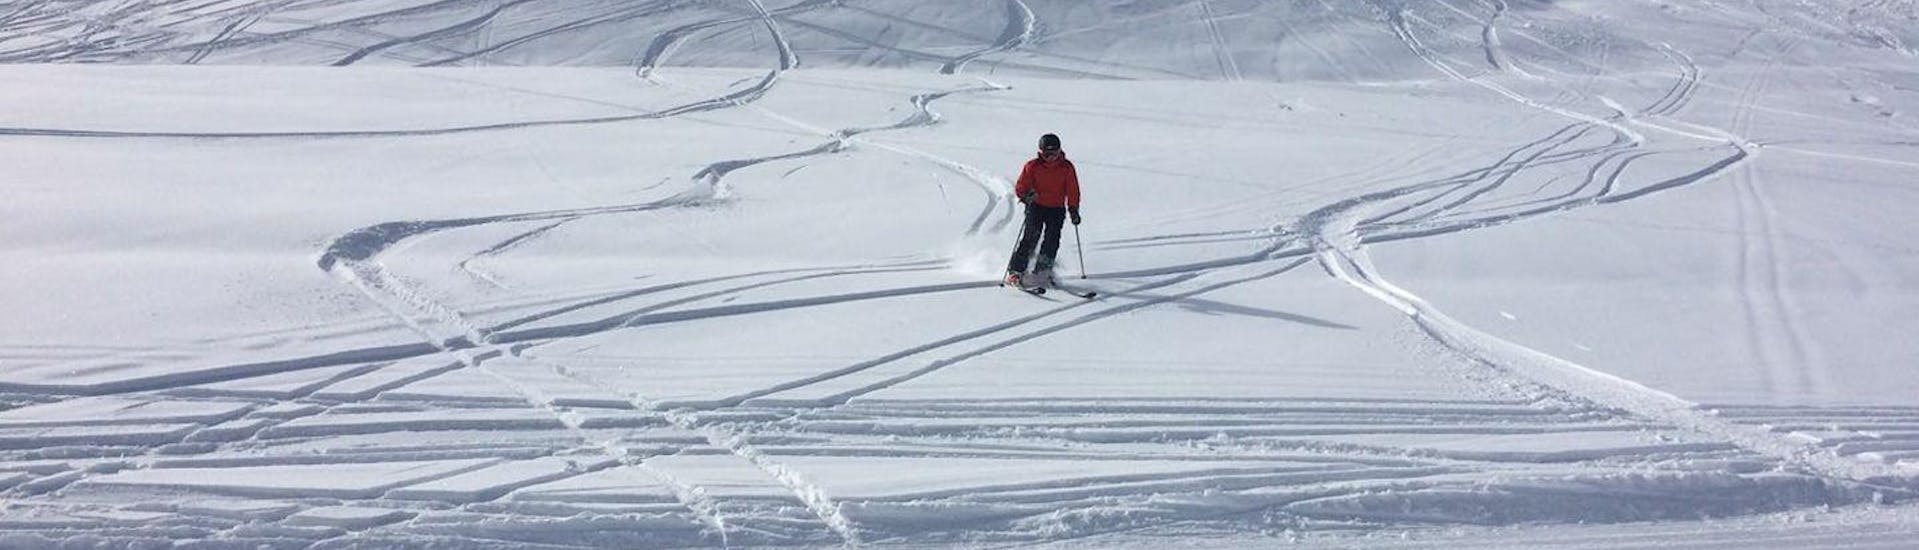 Ein Skfiahrer genießt das Fahren im Tiefschnee während der Privaten Skitour für alle Levels von der Skischule Ingrid Salvenmoser.